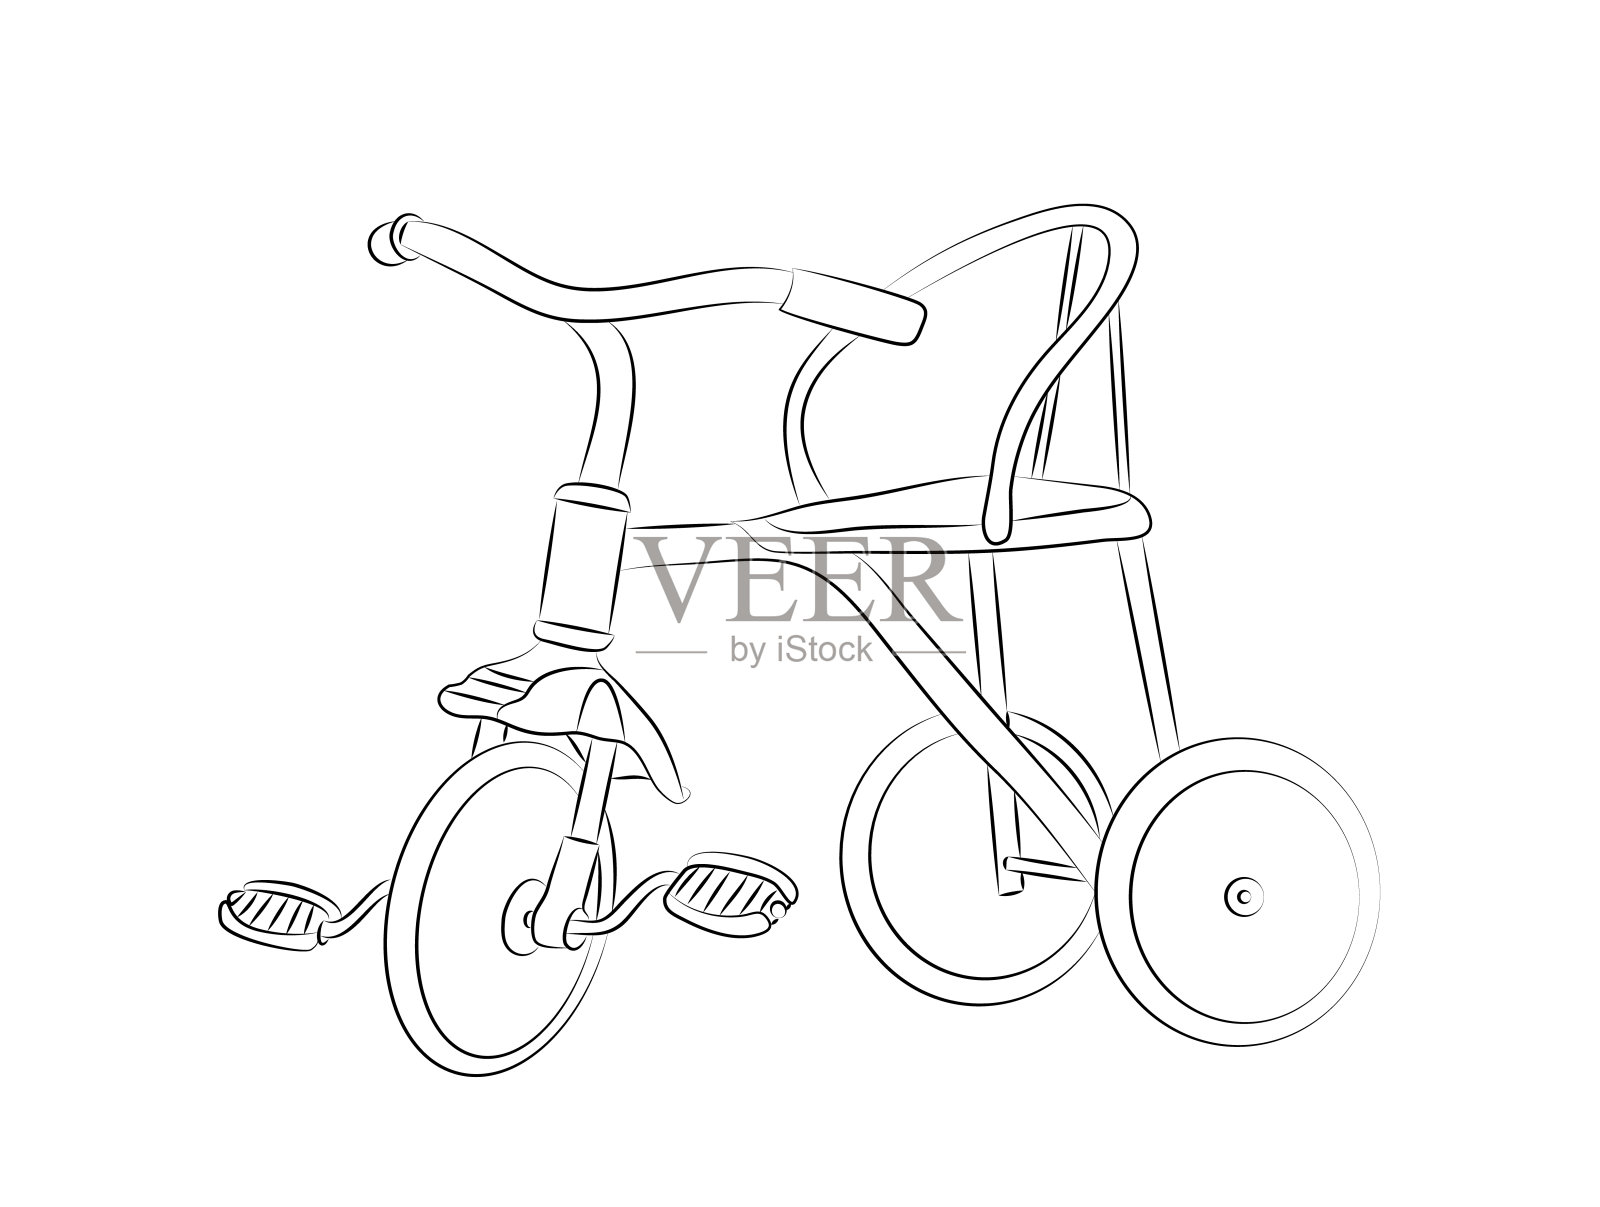 自行车重构素描-图库-五毛网